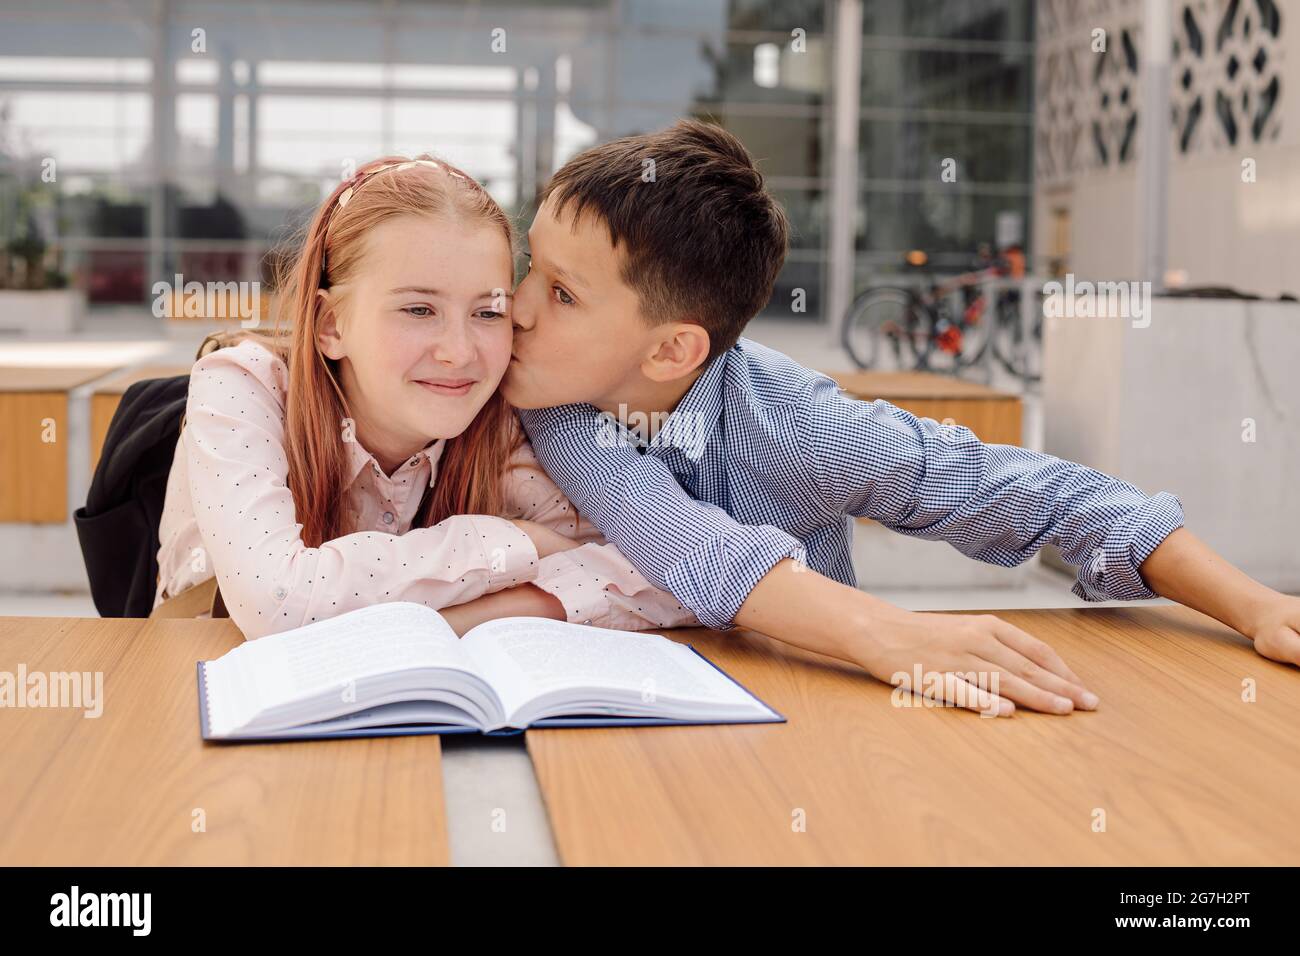 il ragazzo bacia la ragazza nel cortile della scuola. concetto di amore della prima scuola Foto Stock